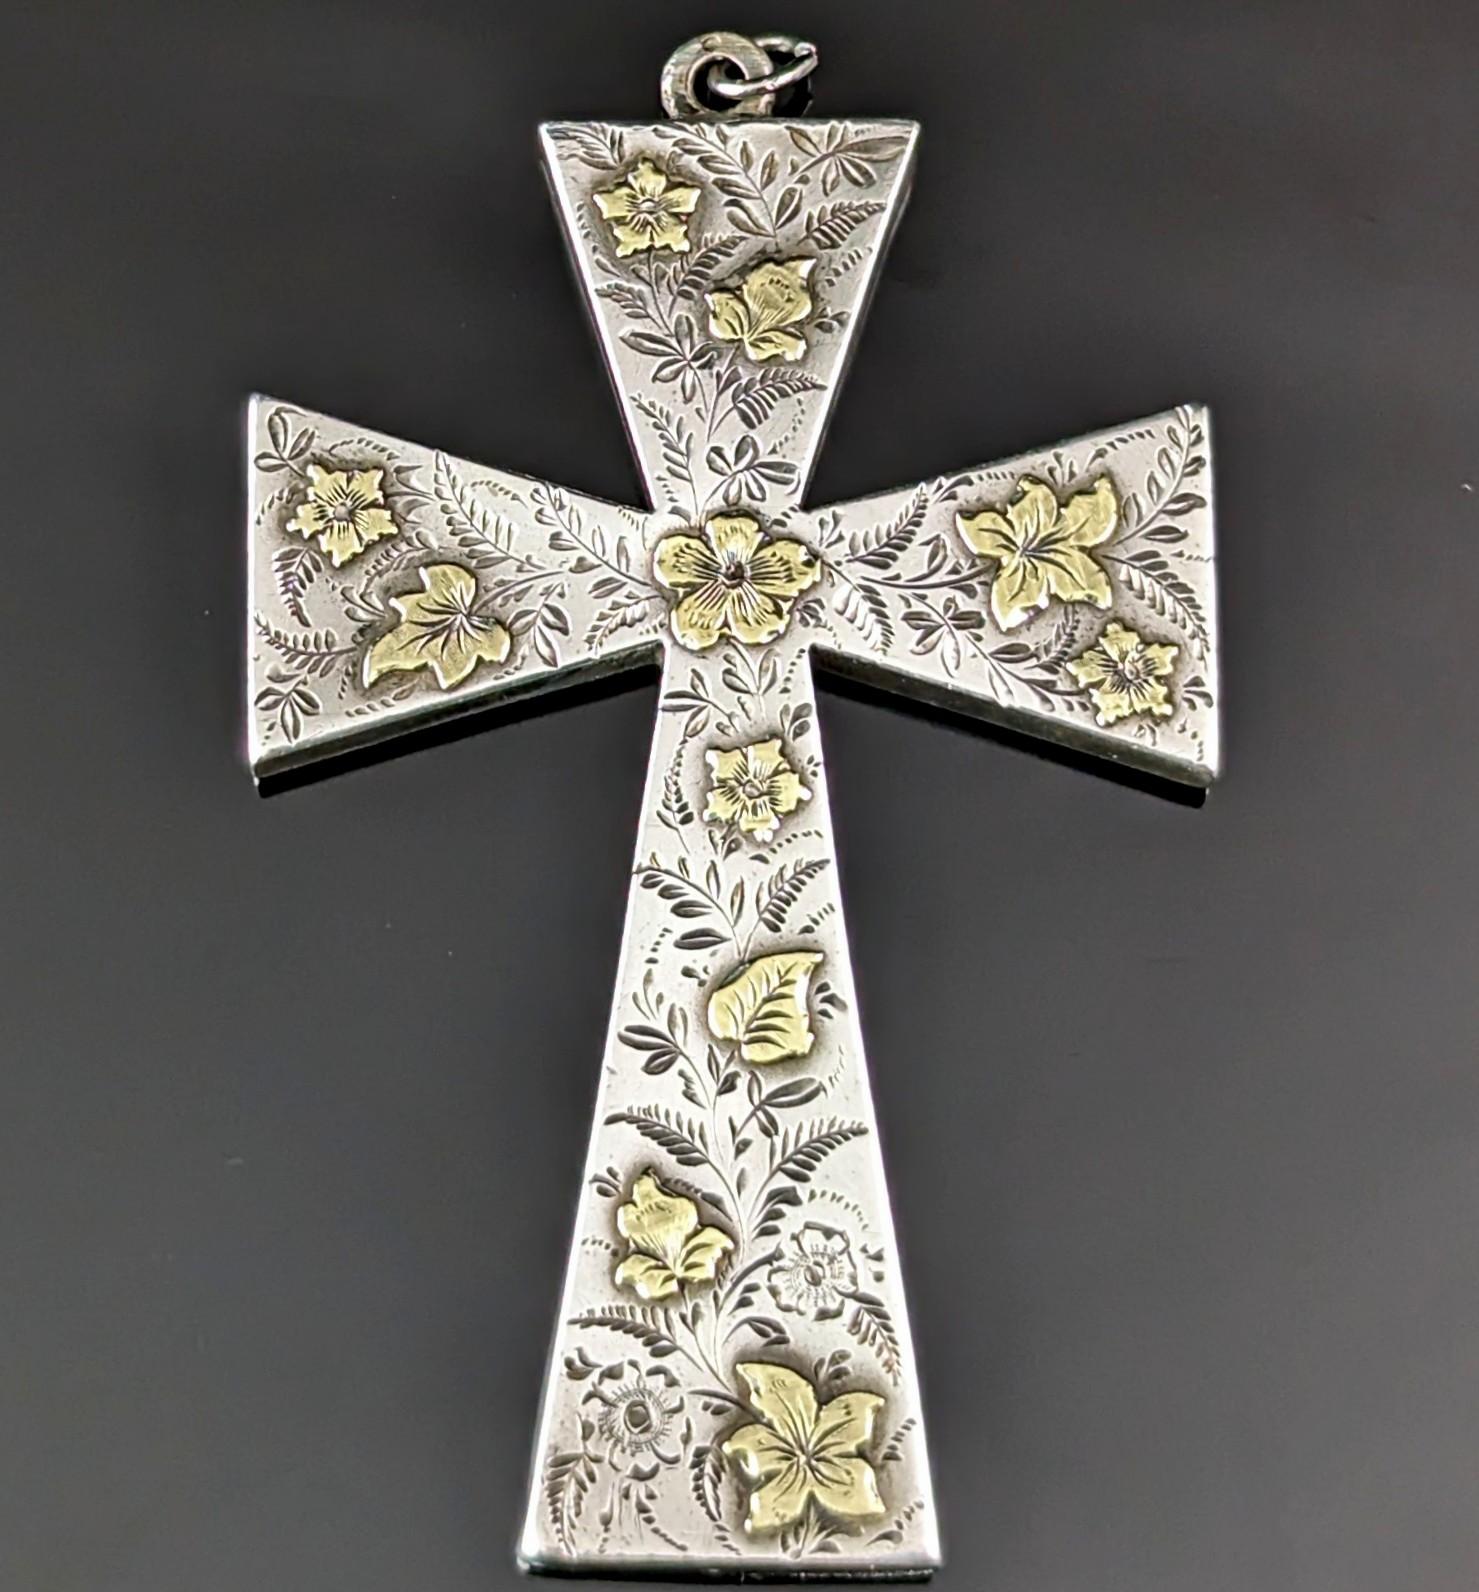 Ce magnifique pendentif en forme de croix de l'époque victorienne esthétique est à la fois saisissant et délicat.

Il s'agit d'un pendentif en forme de croix de grande taille, réalisé en argent sterling et orné de feuilles et de fleurs en or jaune,